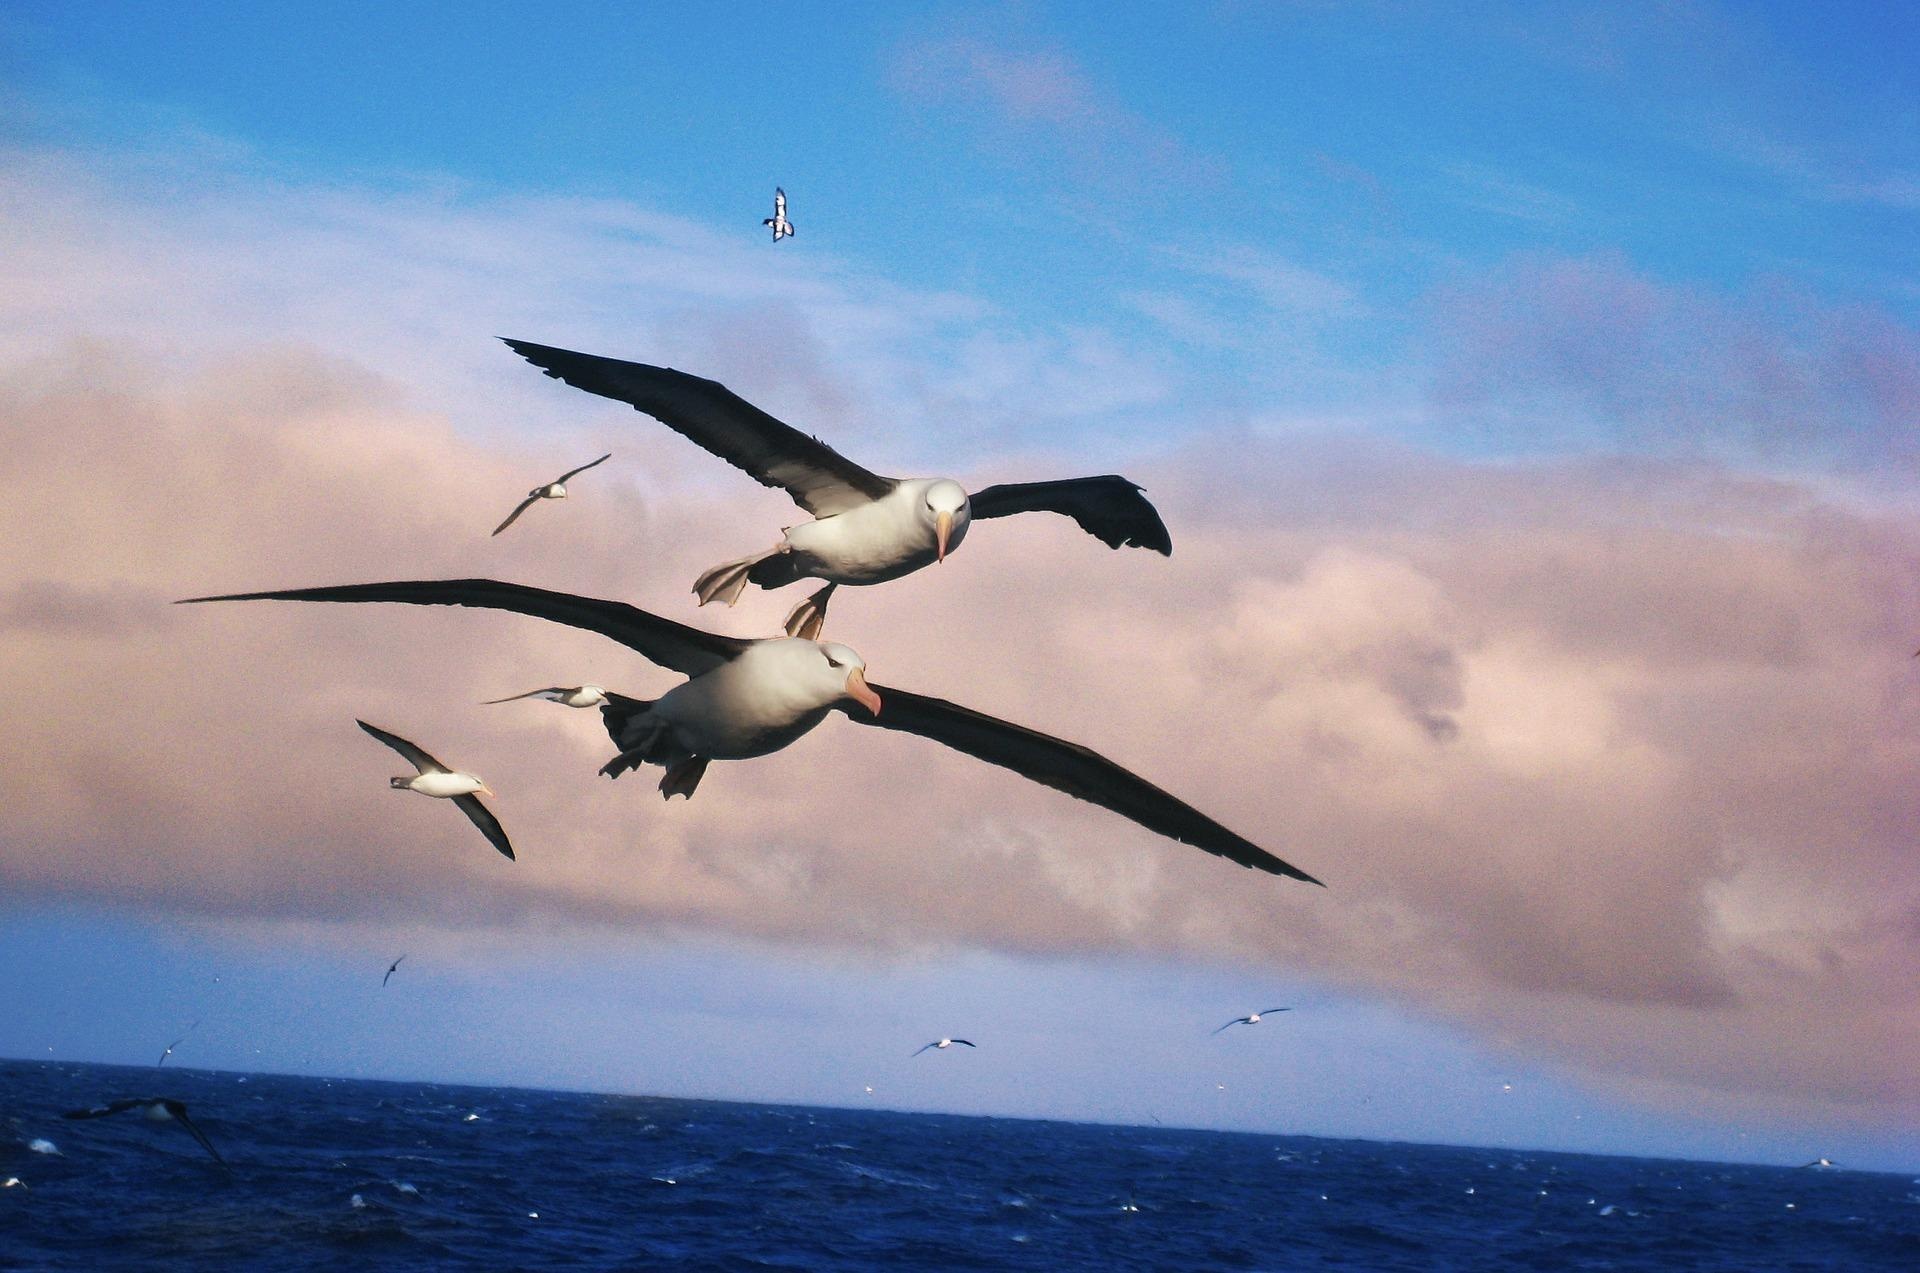 Albatross wallpapers, Graceful avian species, Oceanic glider, Bird in its natural habitat, 1920x1280 HD Desktop